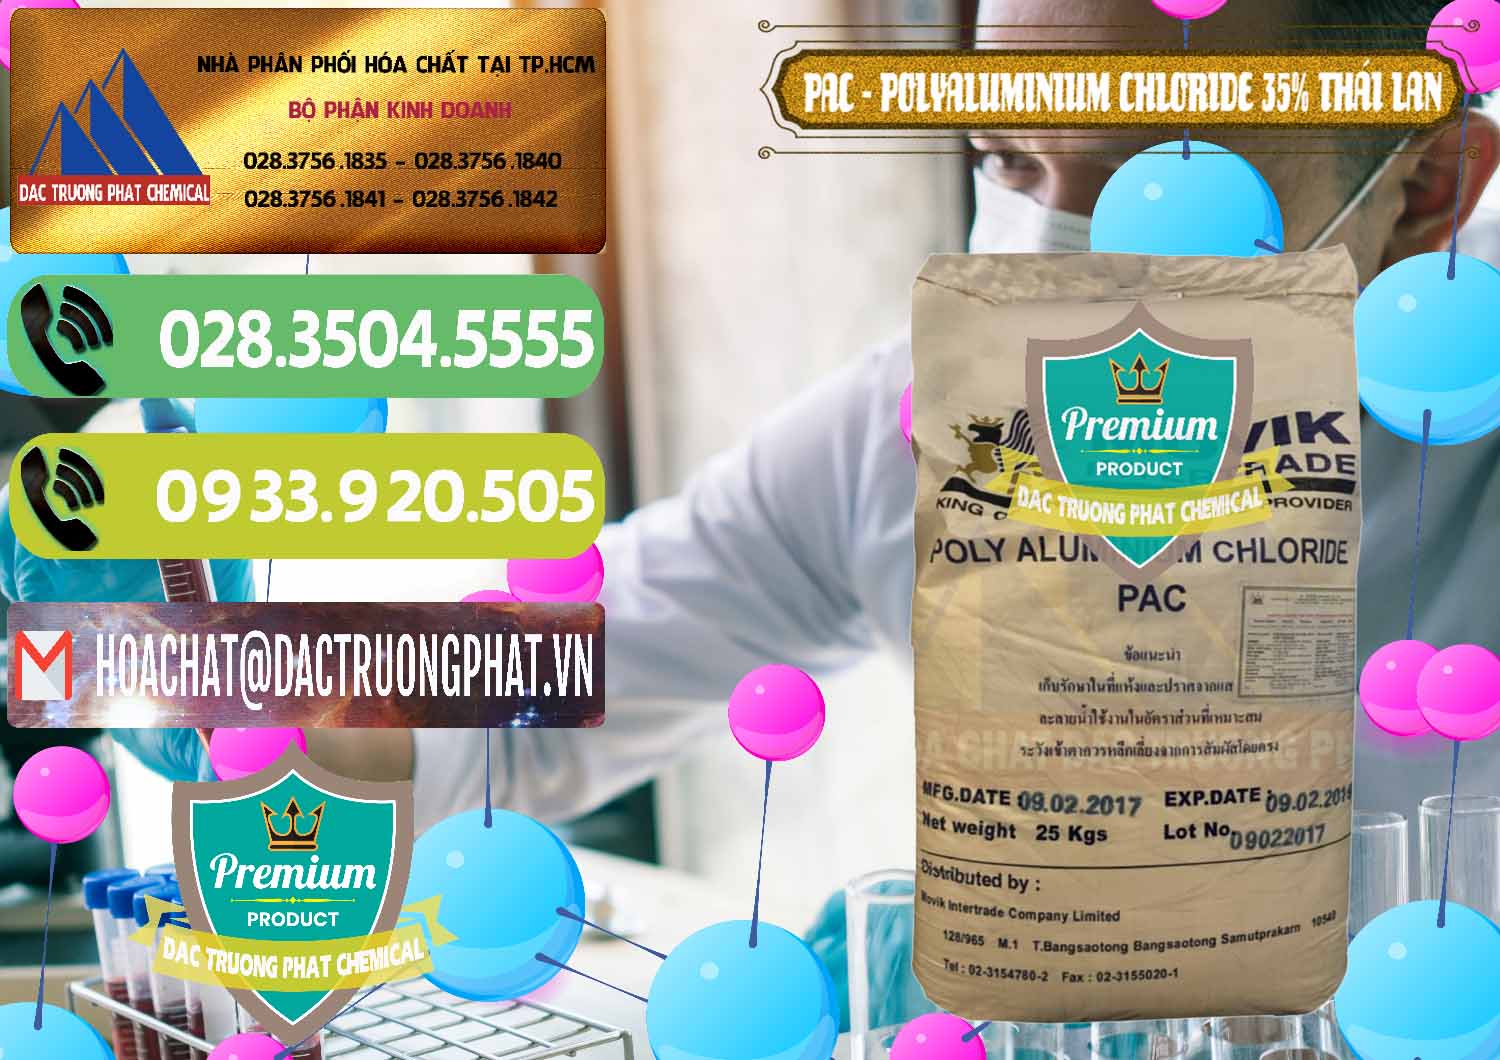 Cty phân phối _ bán PAC - Polyaluminium Chloride 35% Thái Lan Thailand - 0470 - Chuyên bán - cung cấp hóa chất tại TP.HCM - hoachatmientay.vn